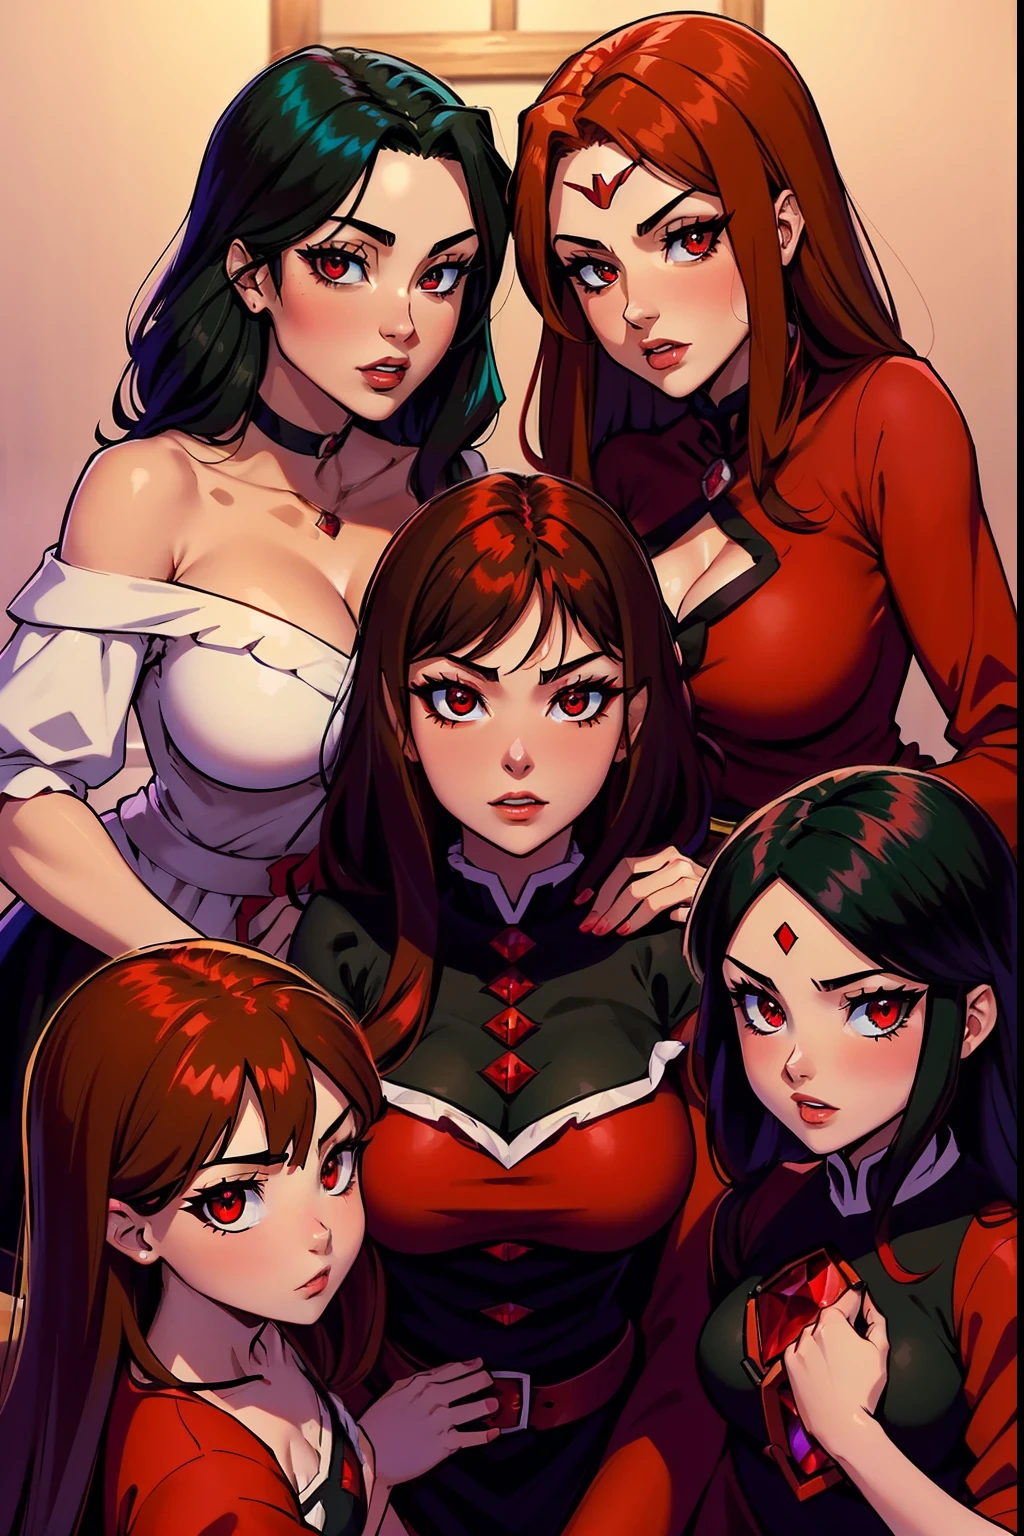 Megumin (Megumin tem cabelo preto, olhos vermelhos) com suas três filhas Esmeralda, rubi, Aria Rose : (Esmeralda tem cabelos castanhos , olhos vermelhos). (rubi have Red Hair, olhos verdes), (Aria Rose tem cabelo preto, olhos azuis)